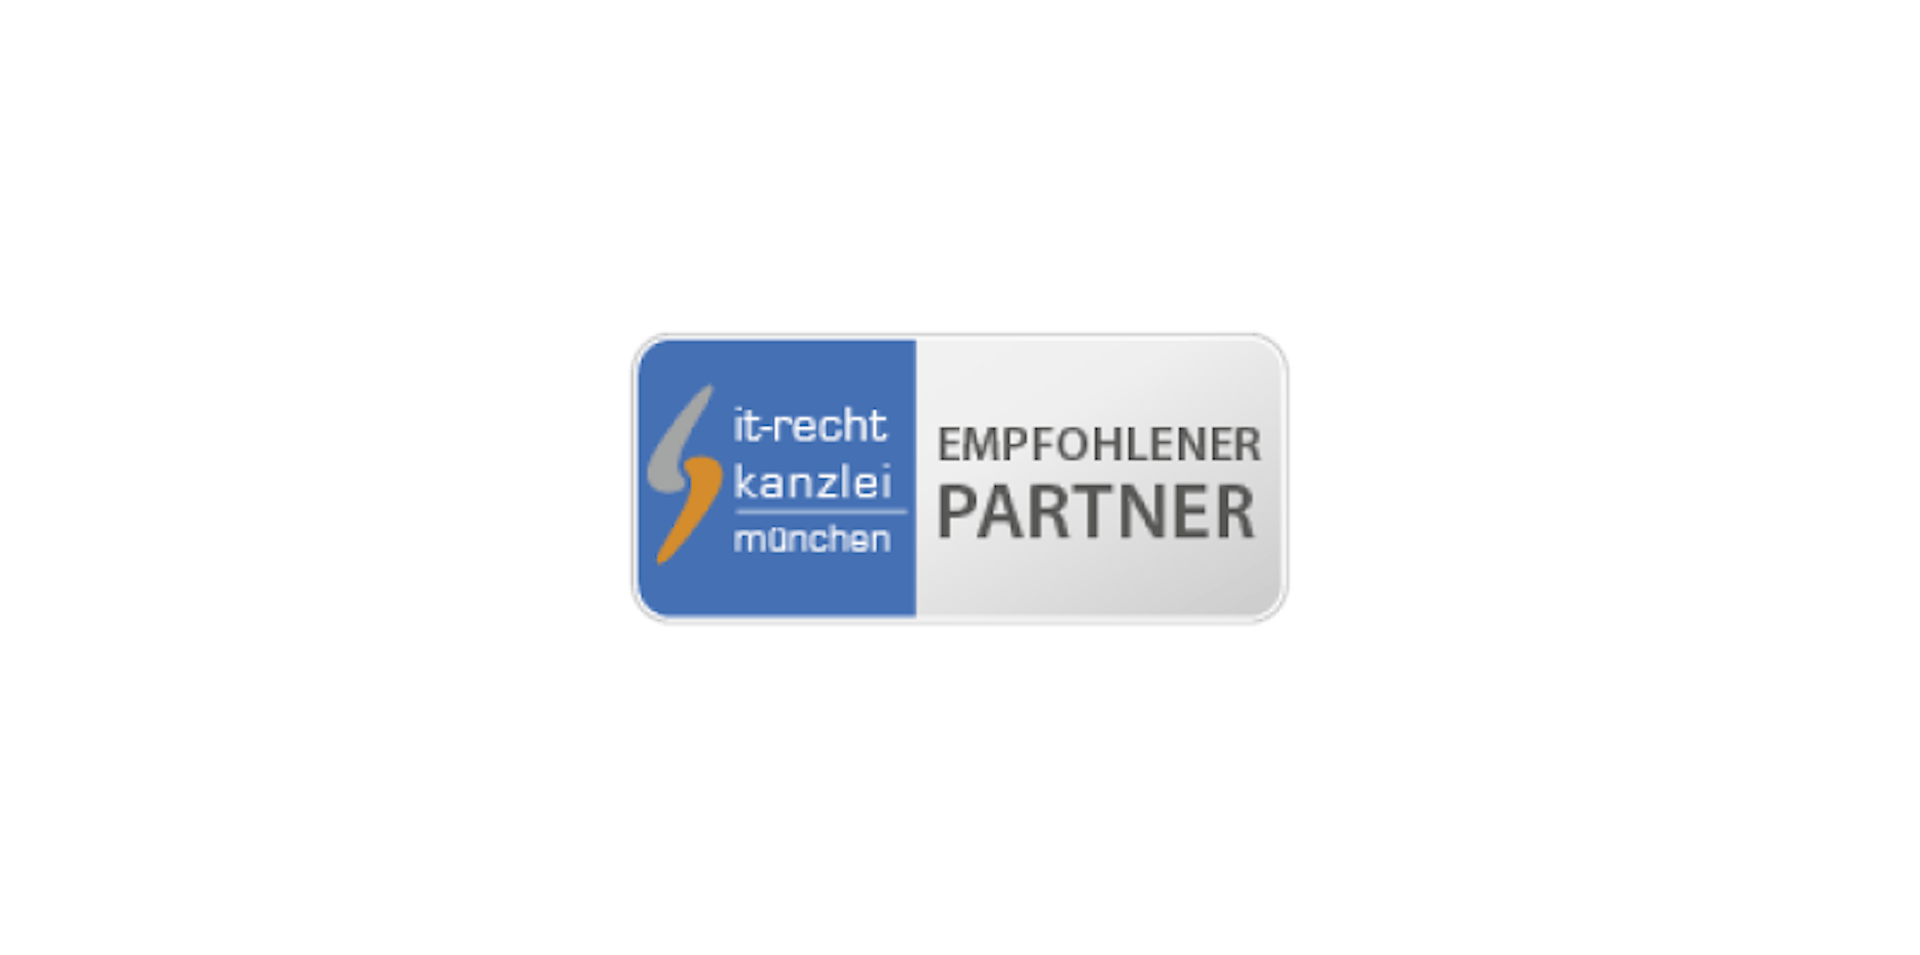 IT-Recht Kanzlei Partner logo